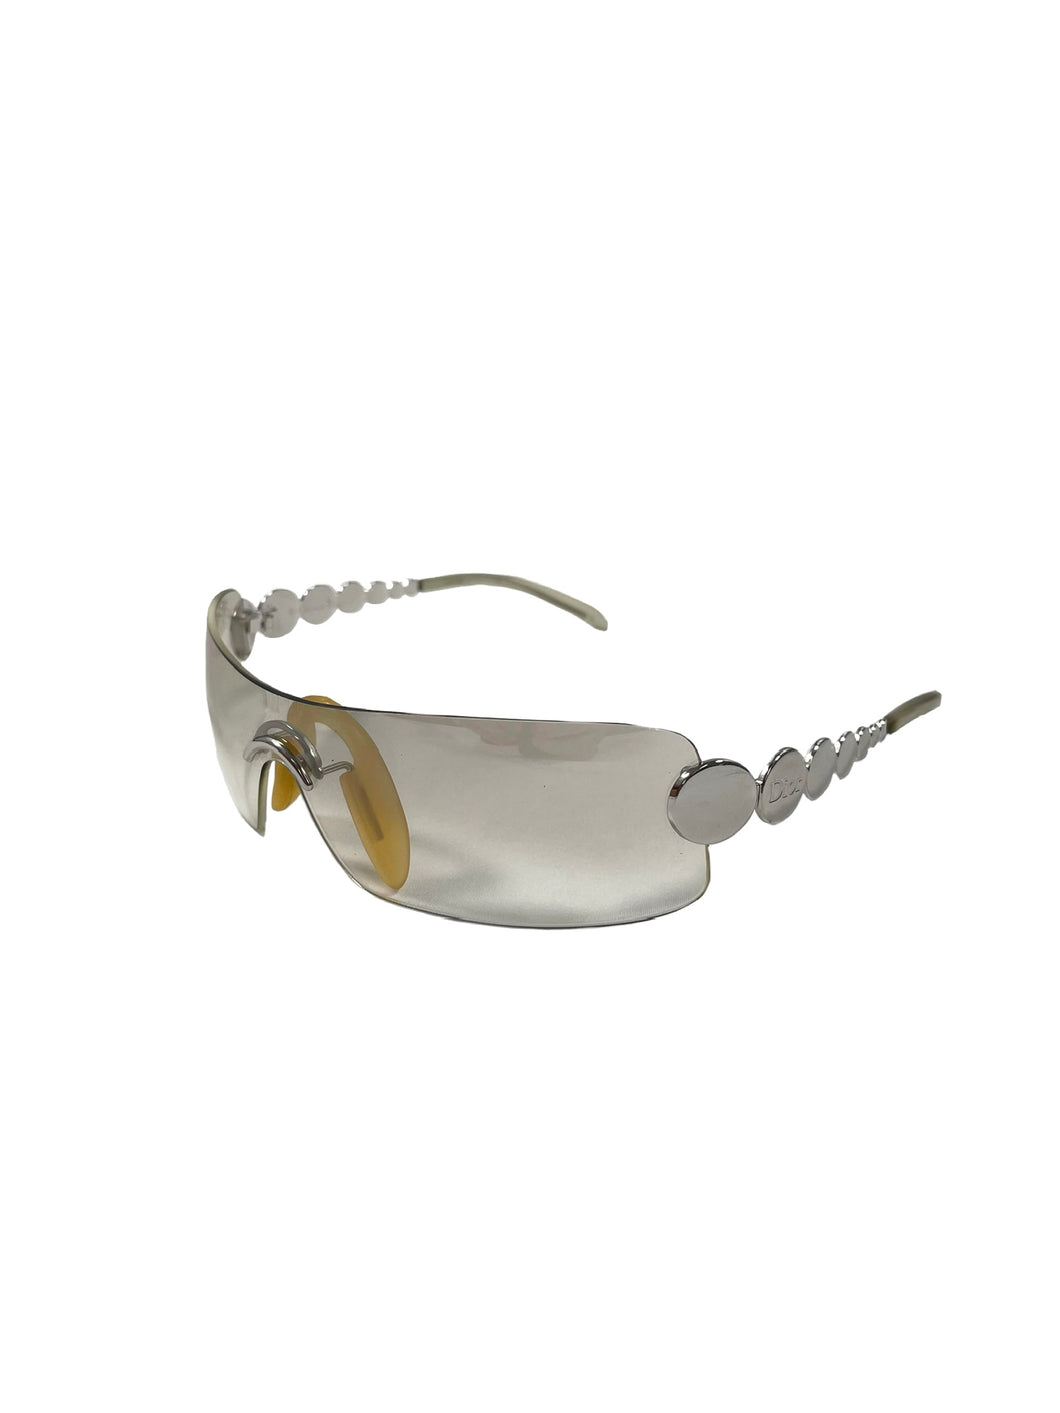 00’s Dior Ruthenium translucent sunglasses